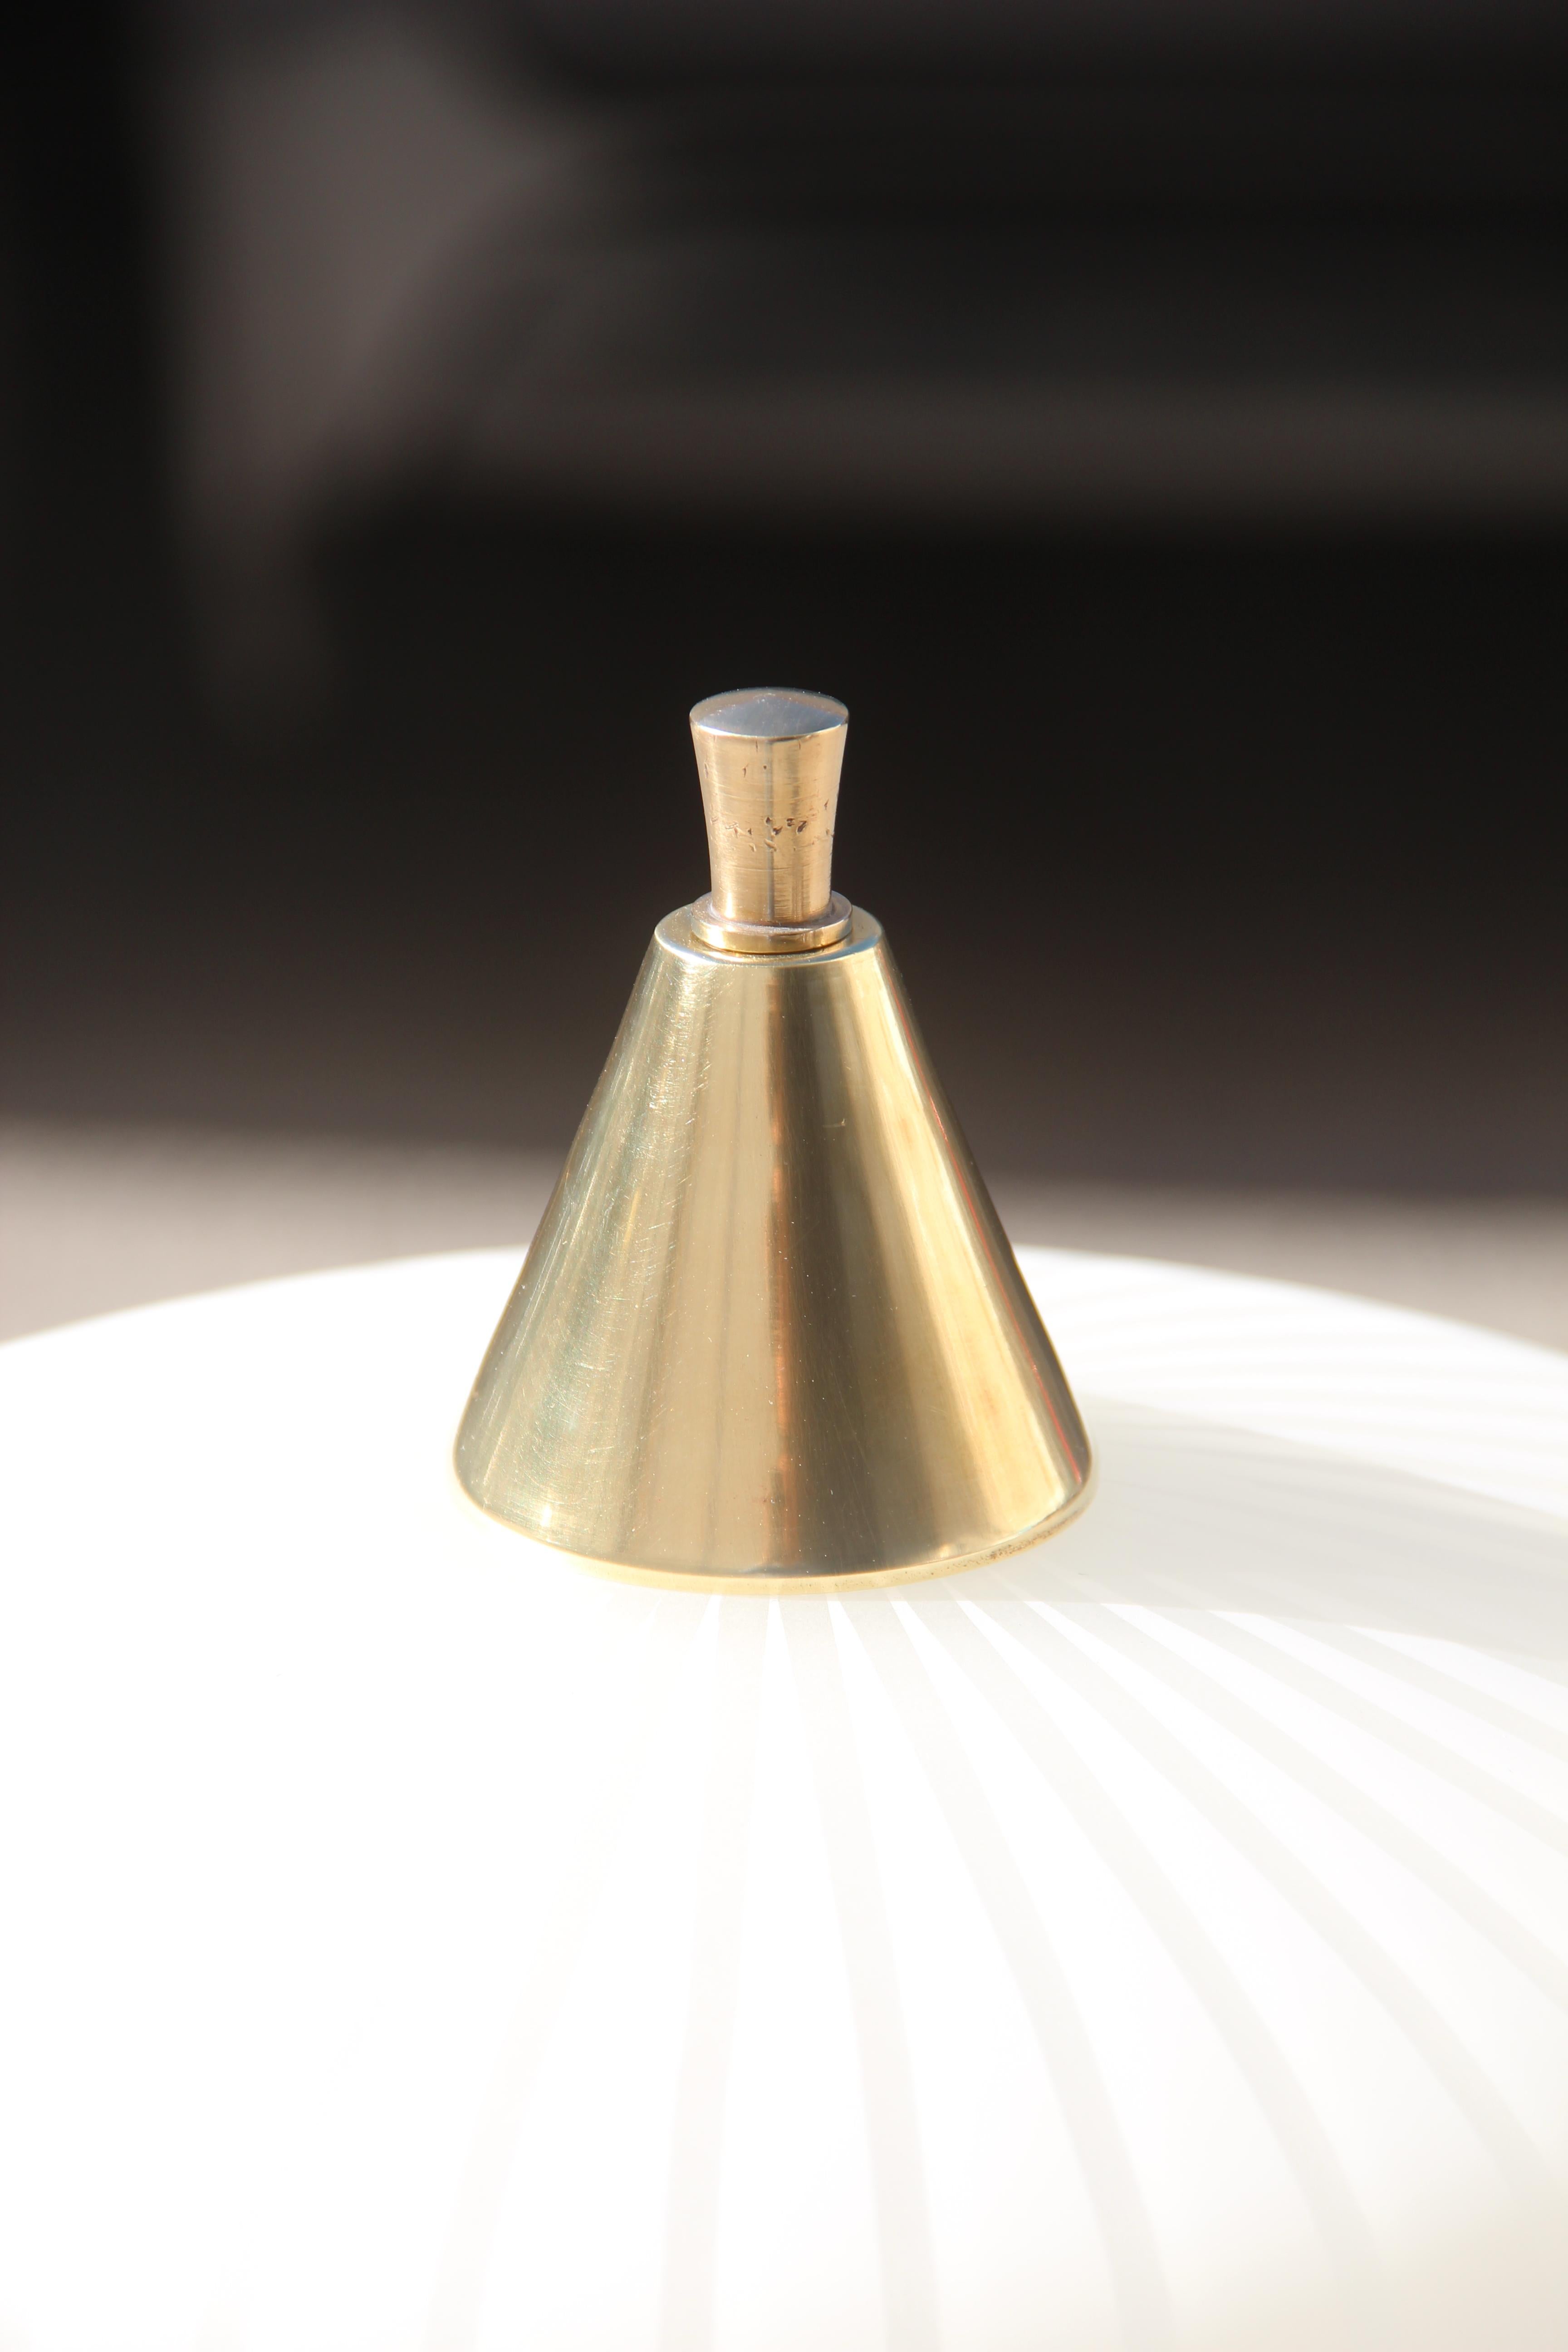 Stilnovo Attributed Mid-Century Modern Italian Floor Lamp Glass Brass White 1950 For Sale 7